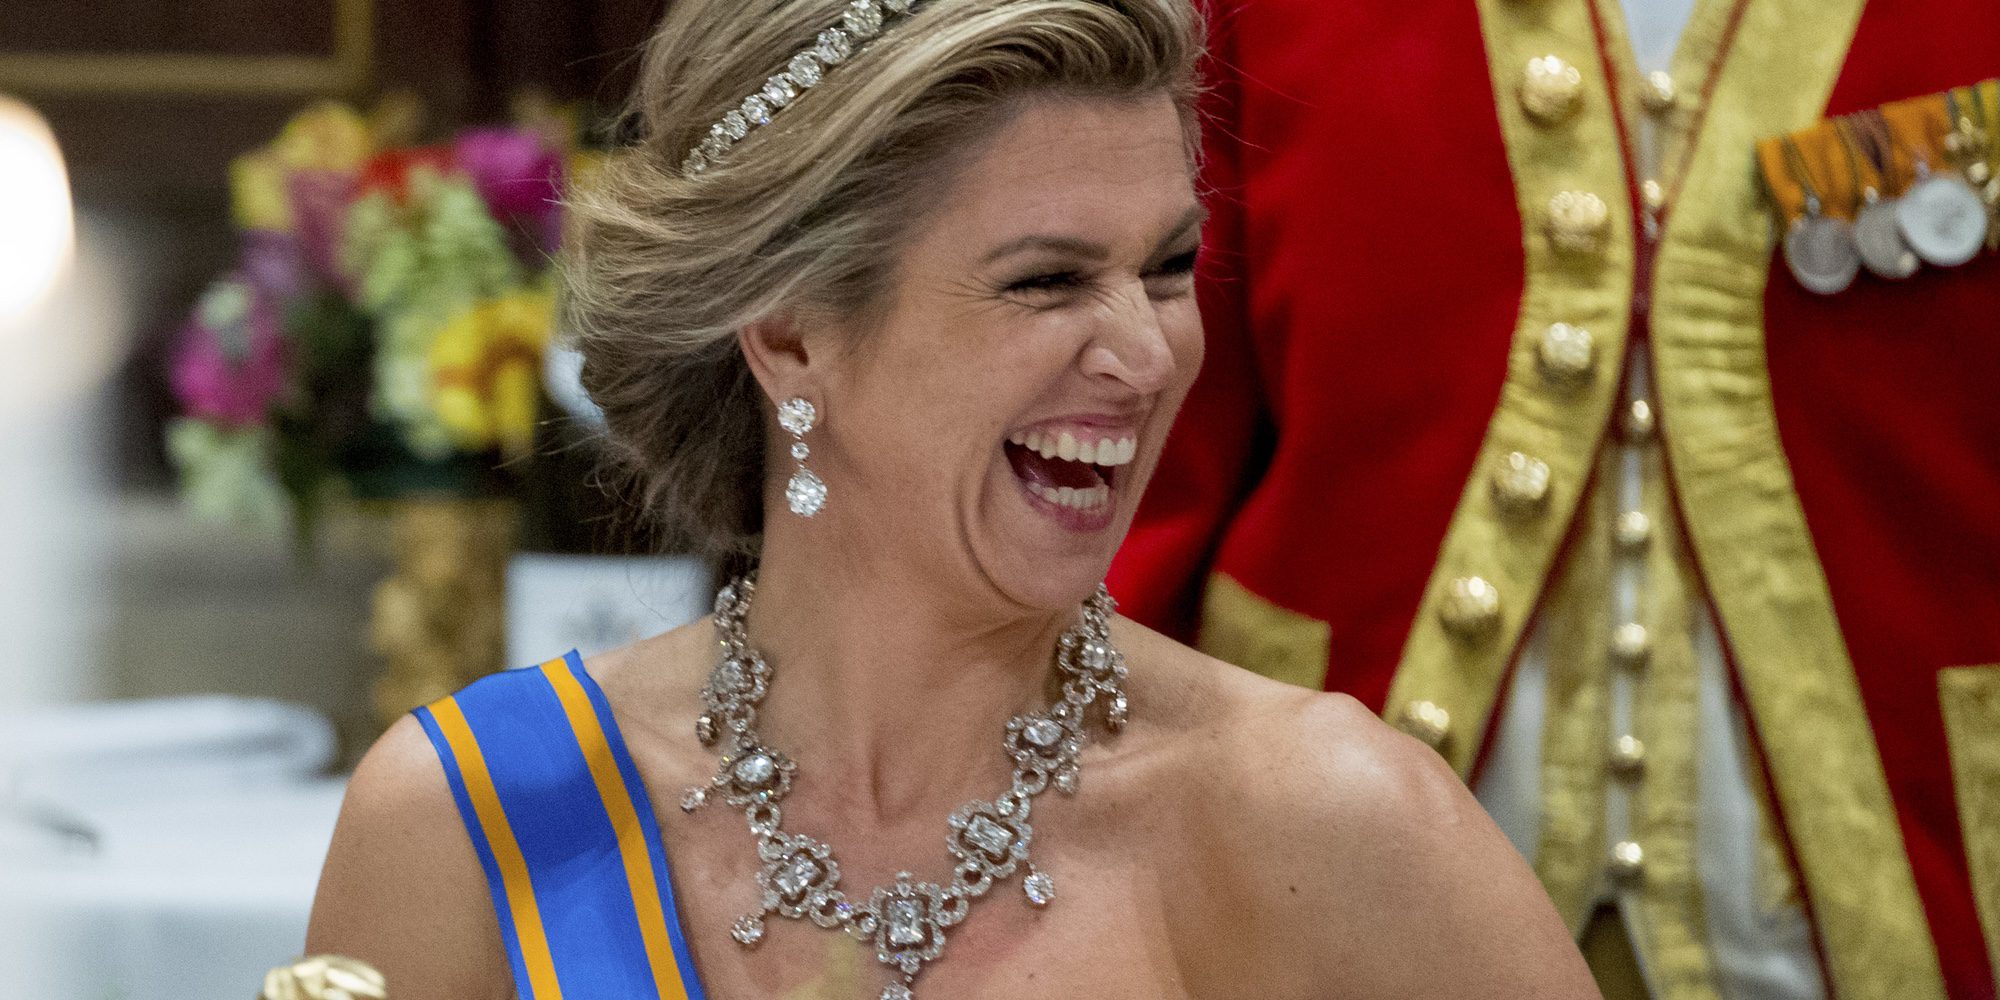 Máxima de Holanda consigue brillar por encima de Juliana Awada en el Palacio Real de Ámsterdam